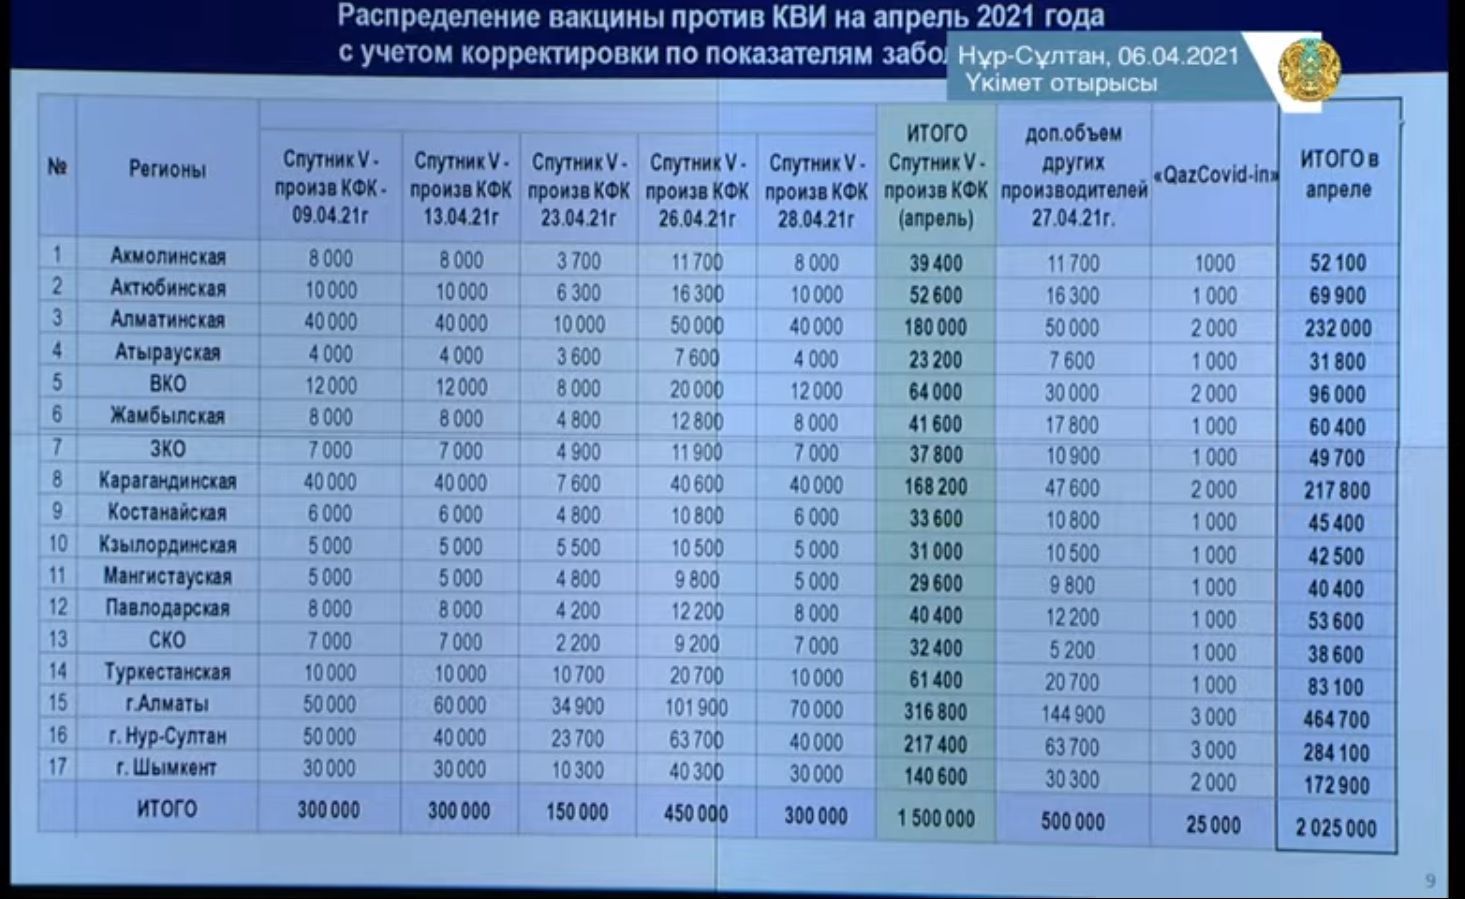 Таблица с данными о распределении вакцины Спутник V по регионам Казахстана в апреле 2021 года